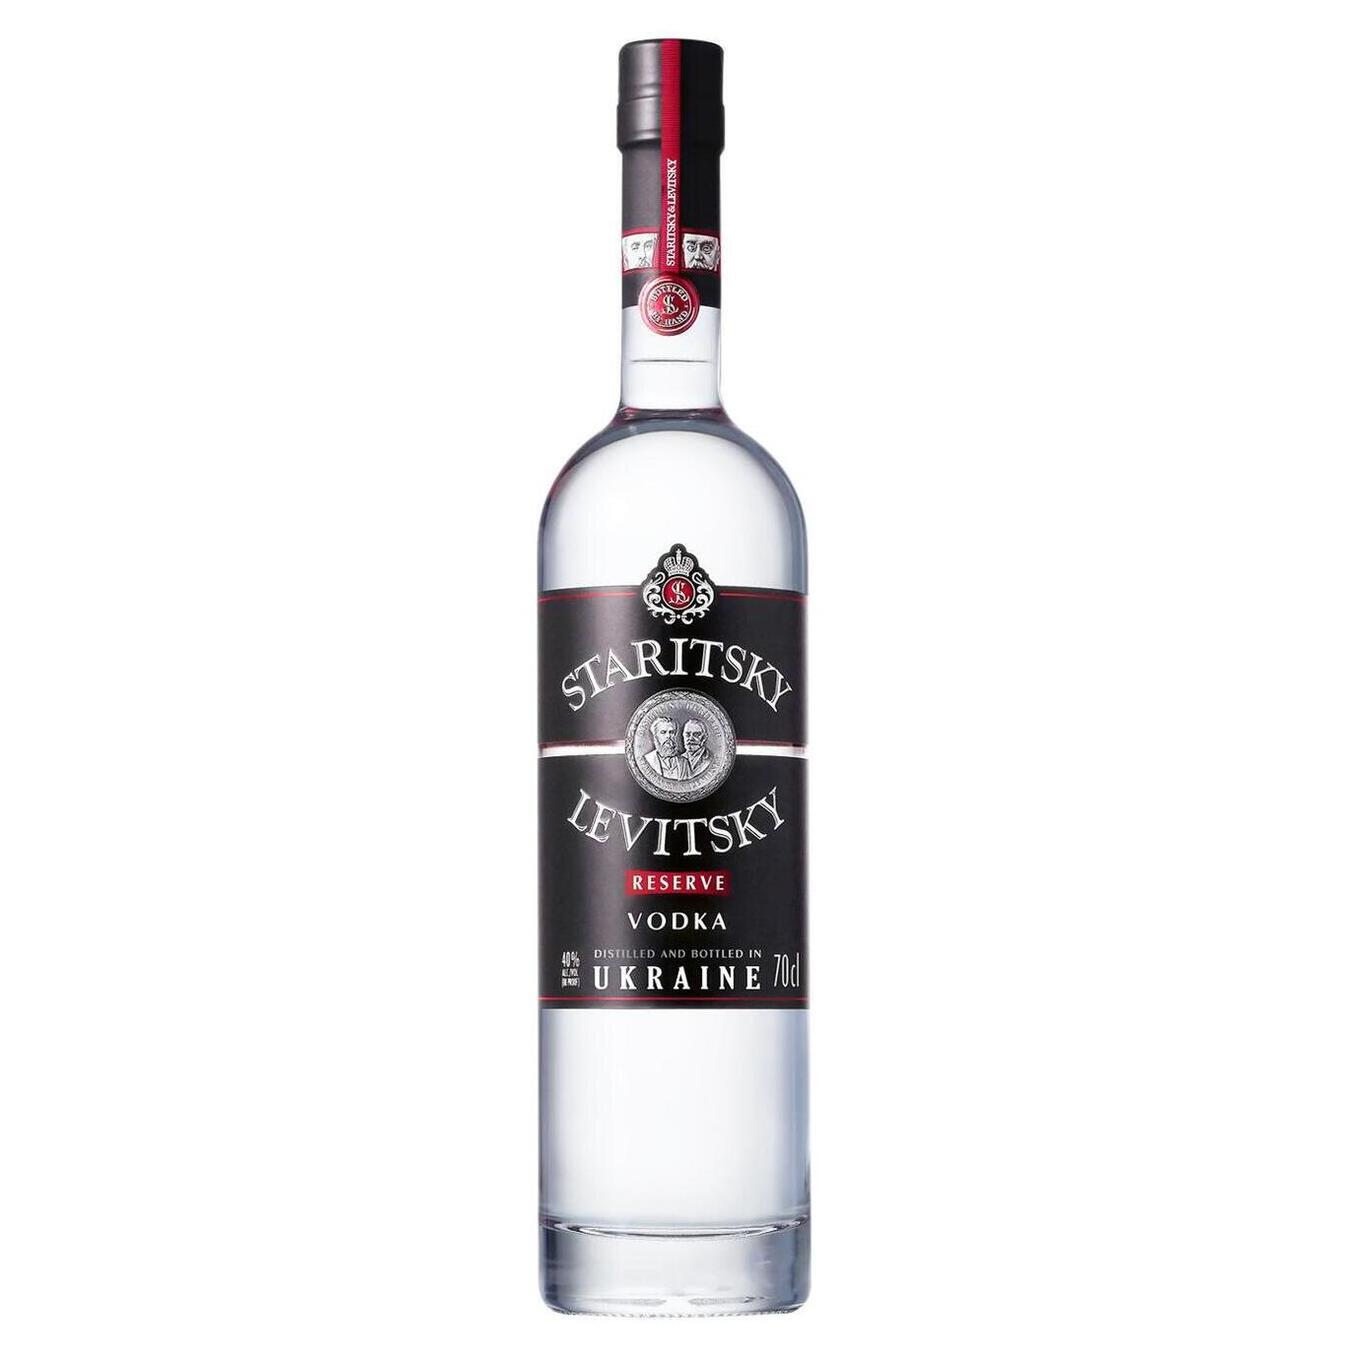 Vodka Staritsky Levitsky Reserve 40% 0.7l